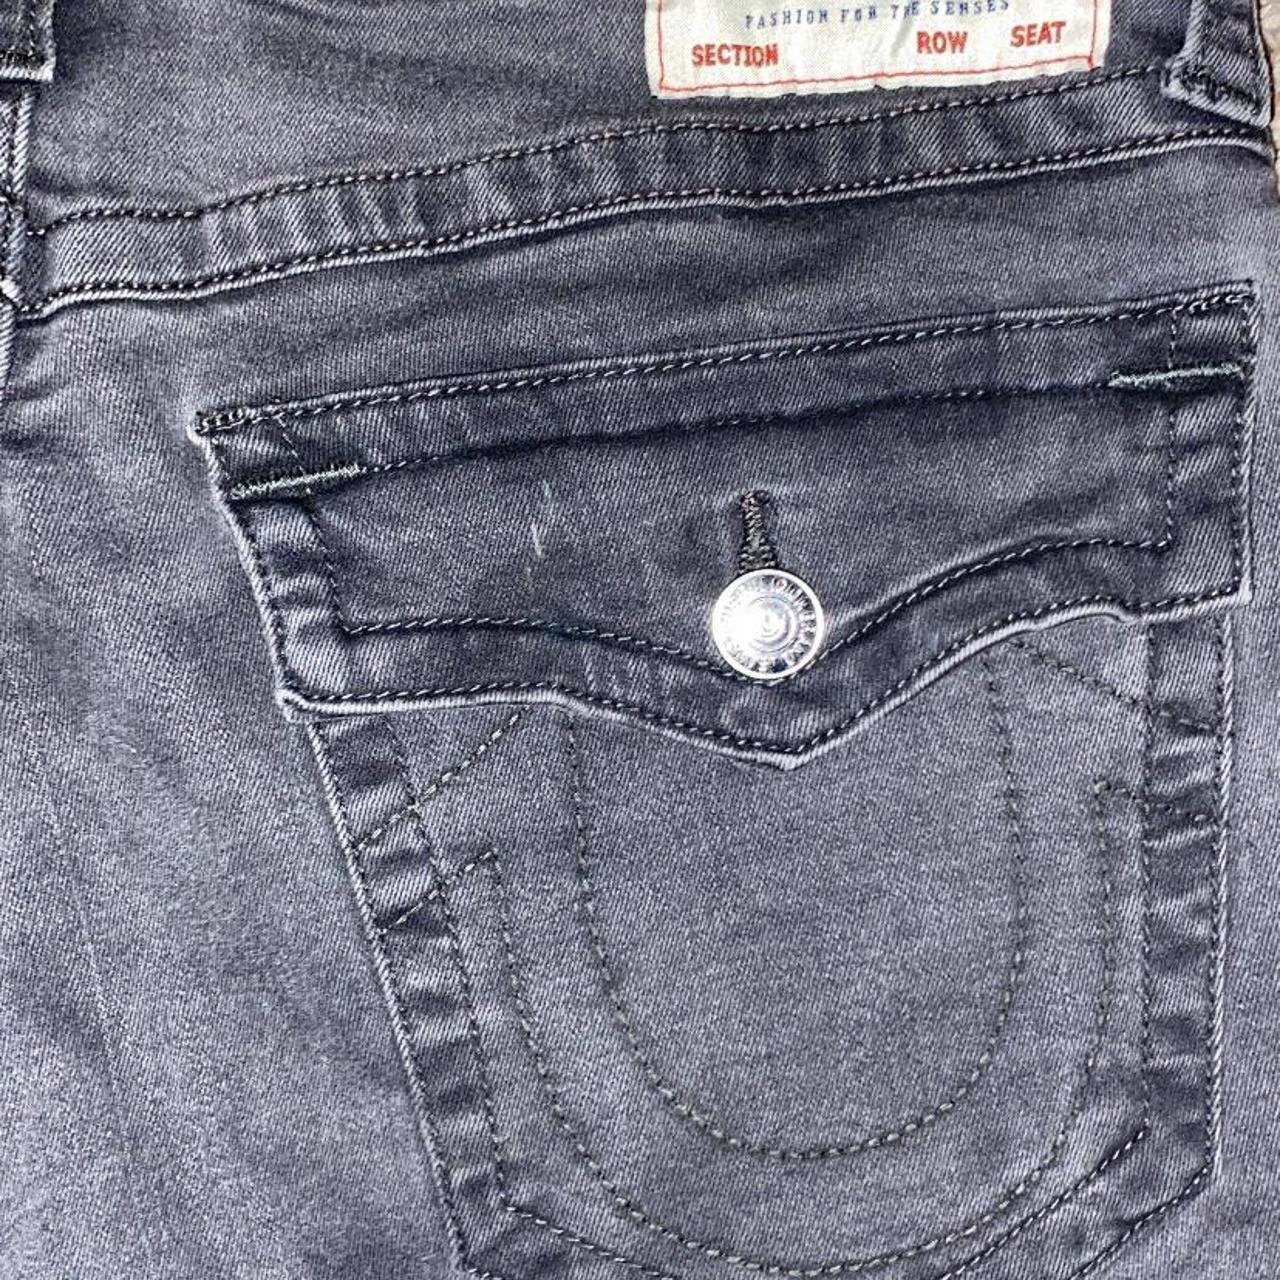 grey true religion jeans black stitching... - Depop